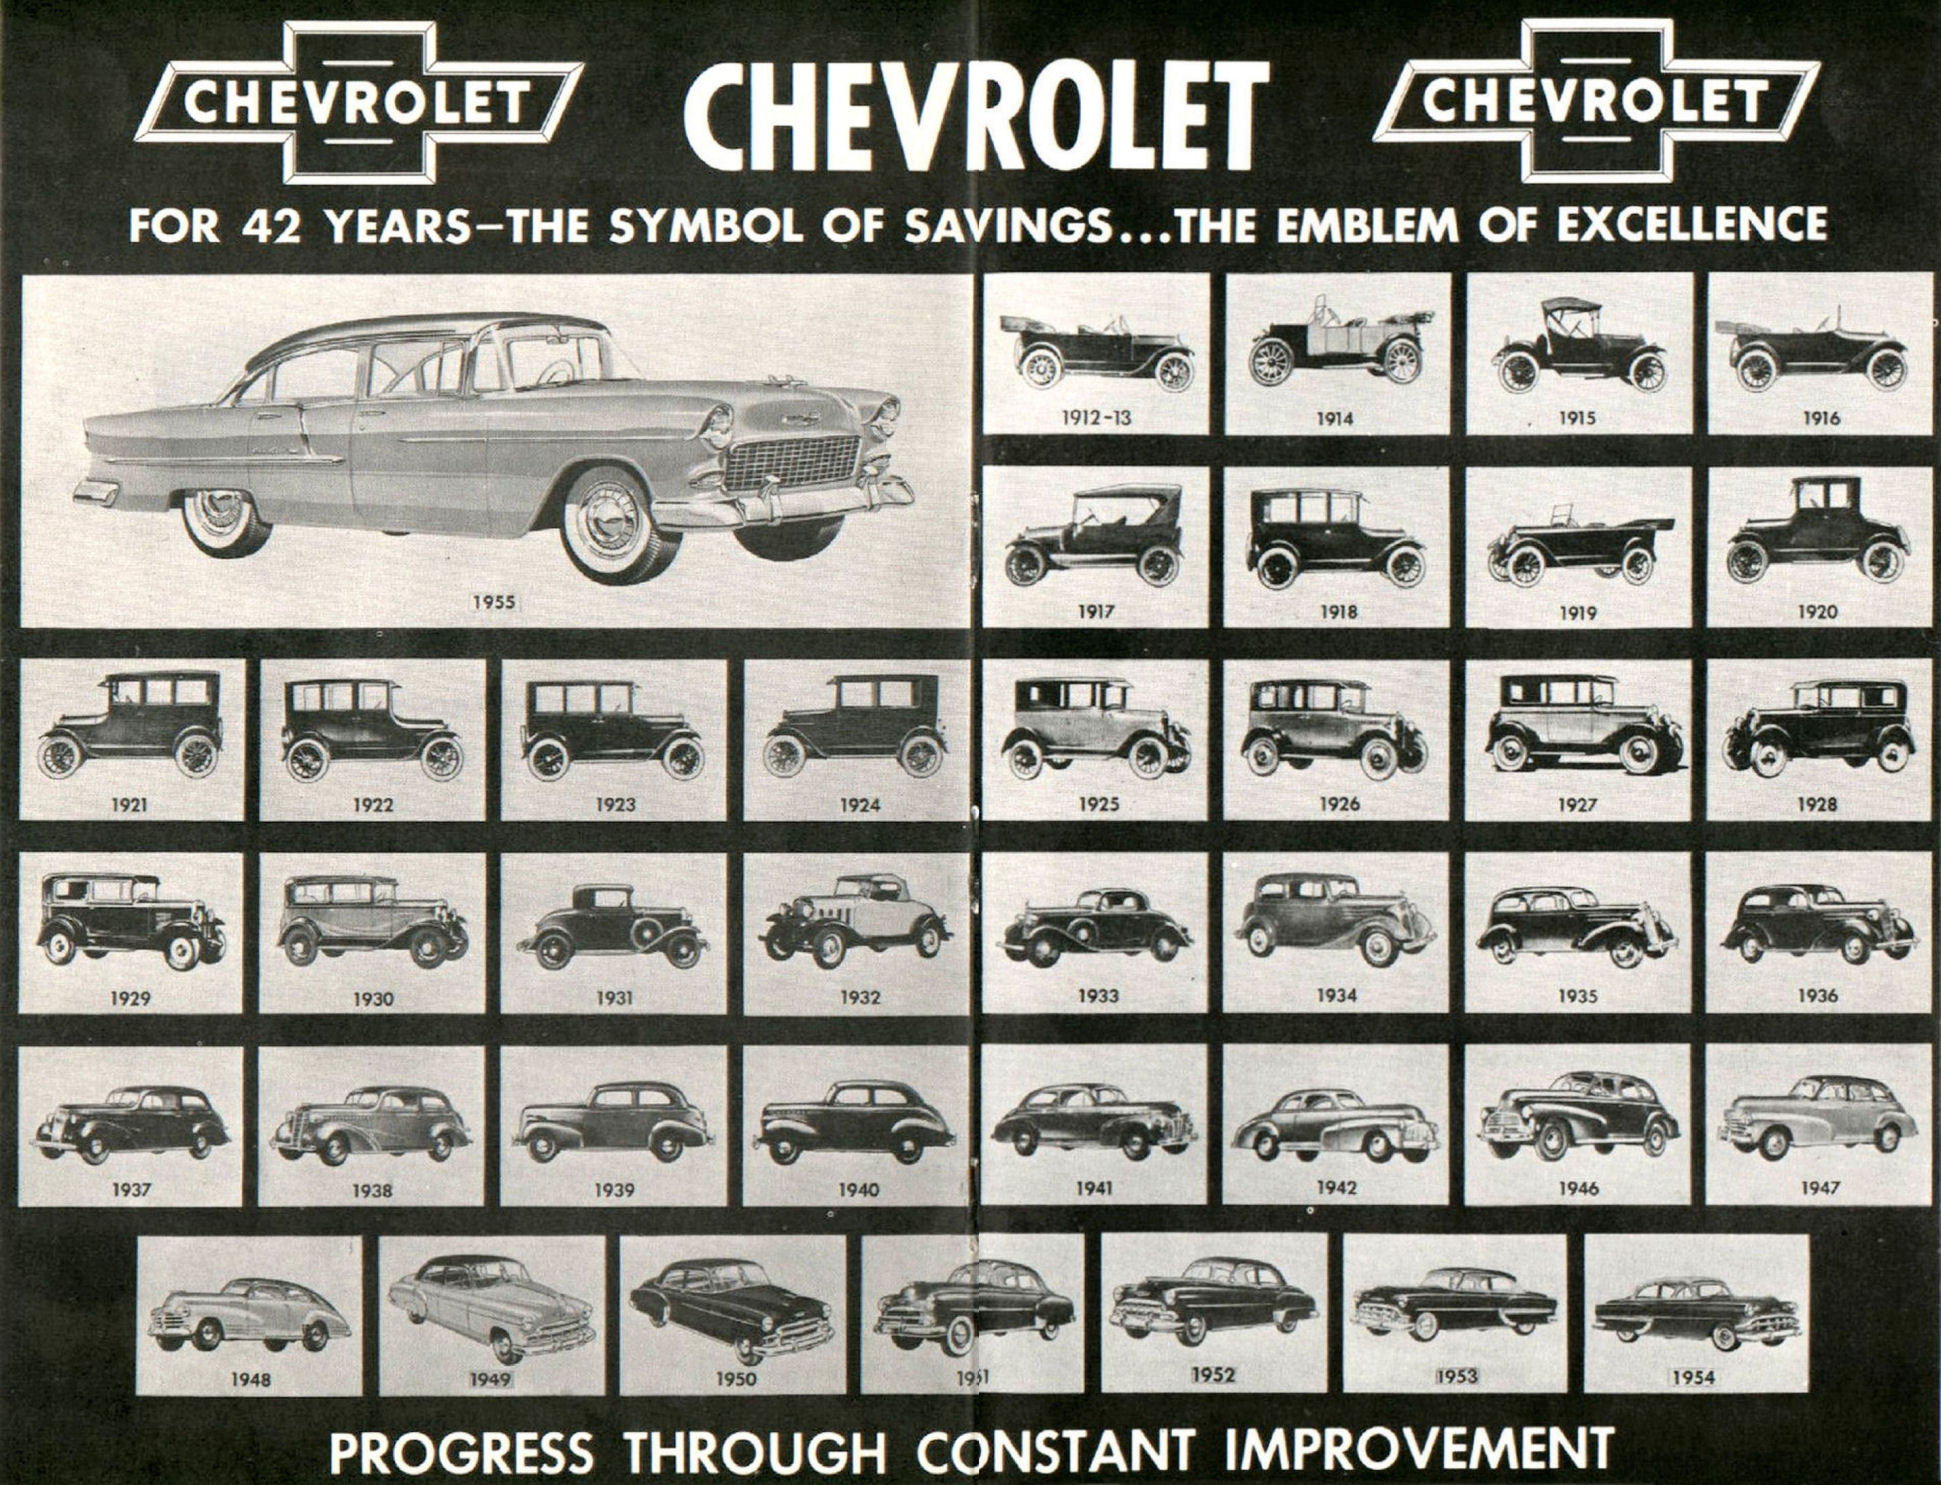 1955_Chevrolet_Story-24-25